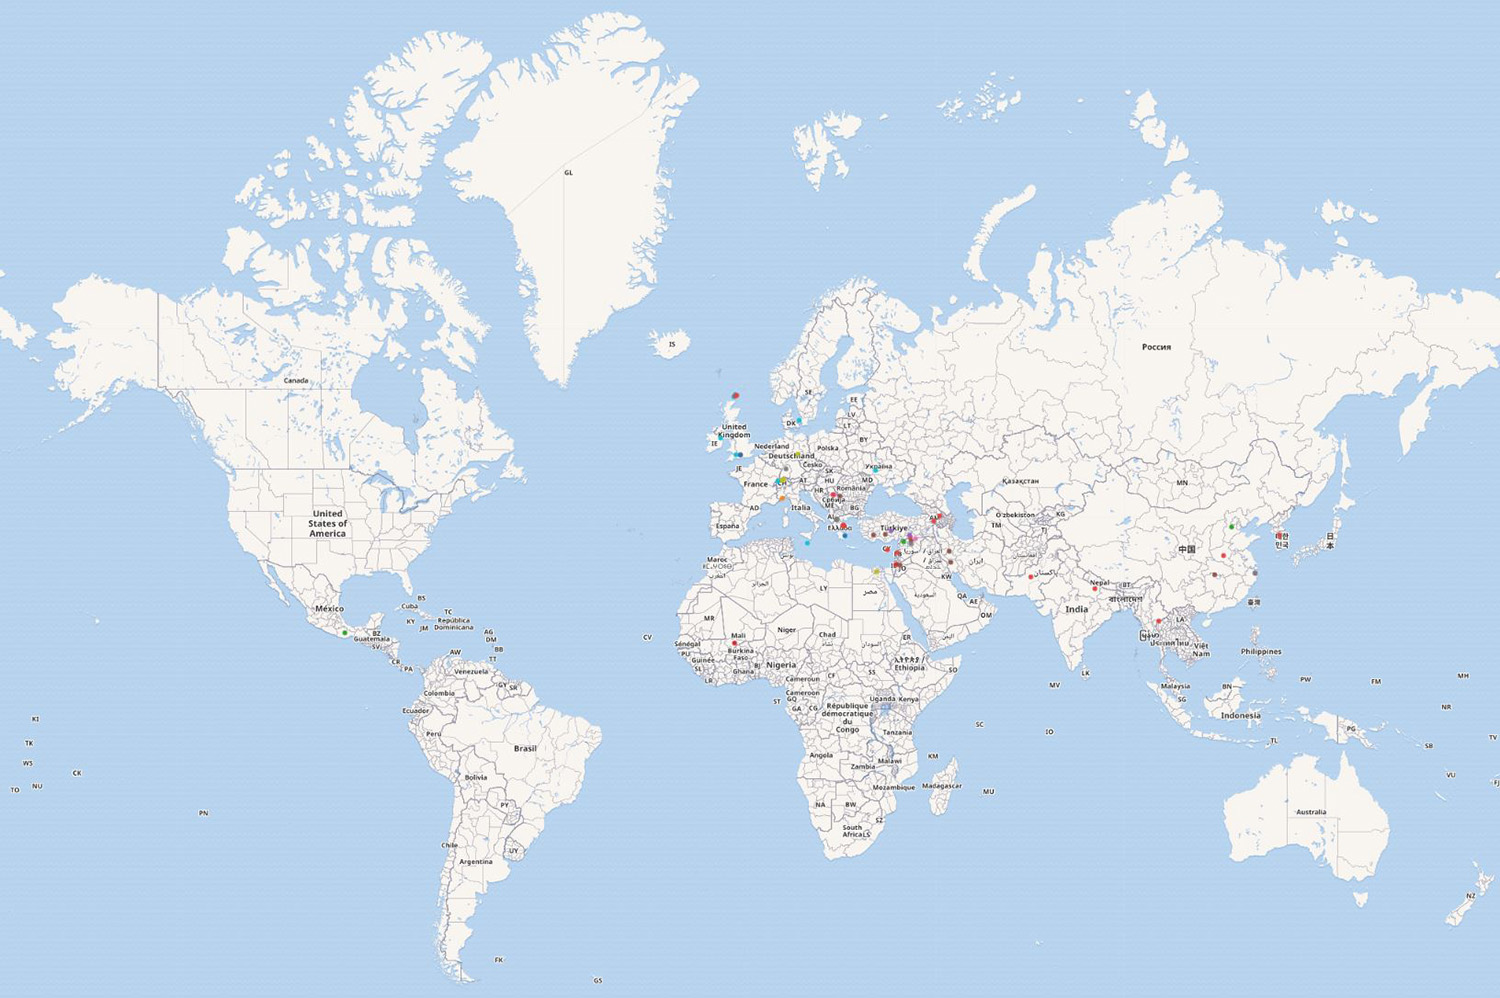 Ergebnis der Fundorte dargestellt auf einer Weltkarte